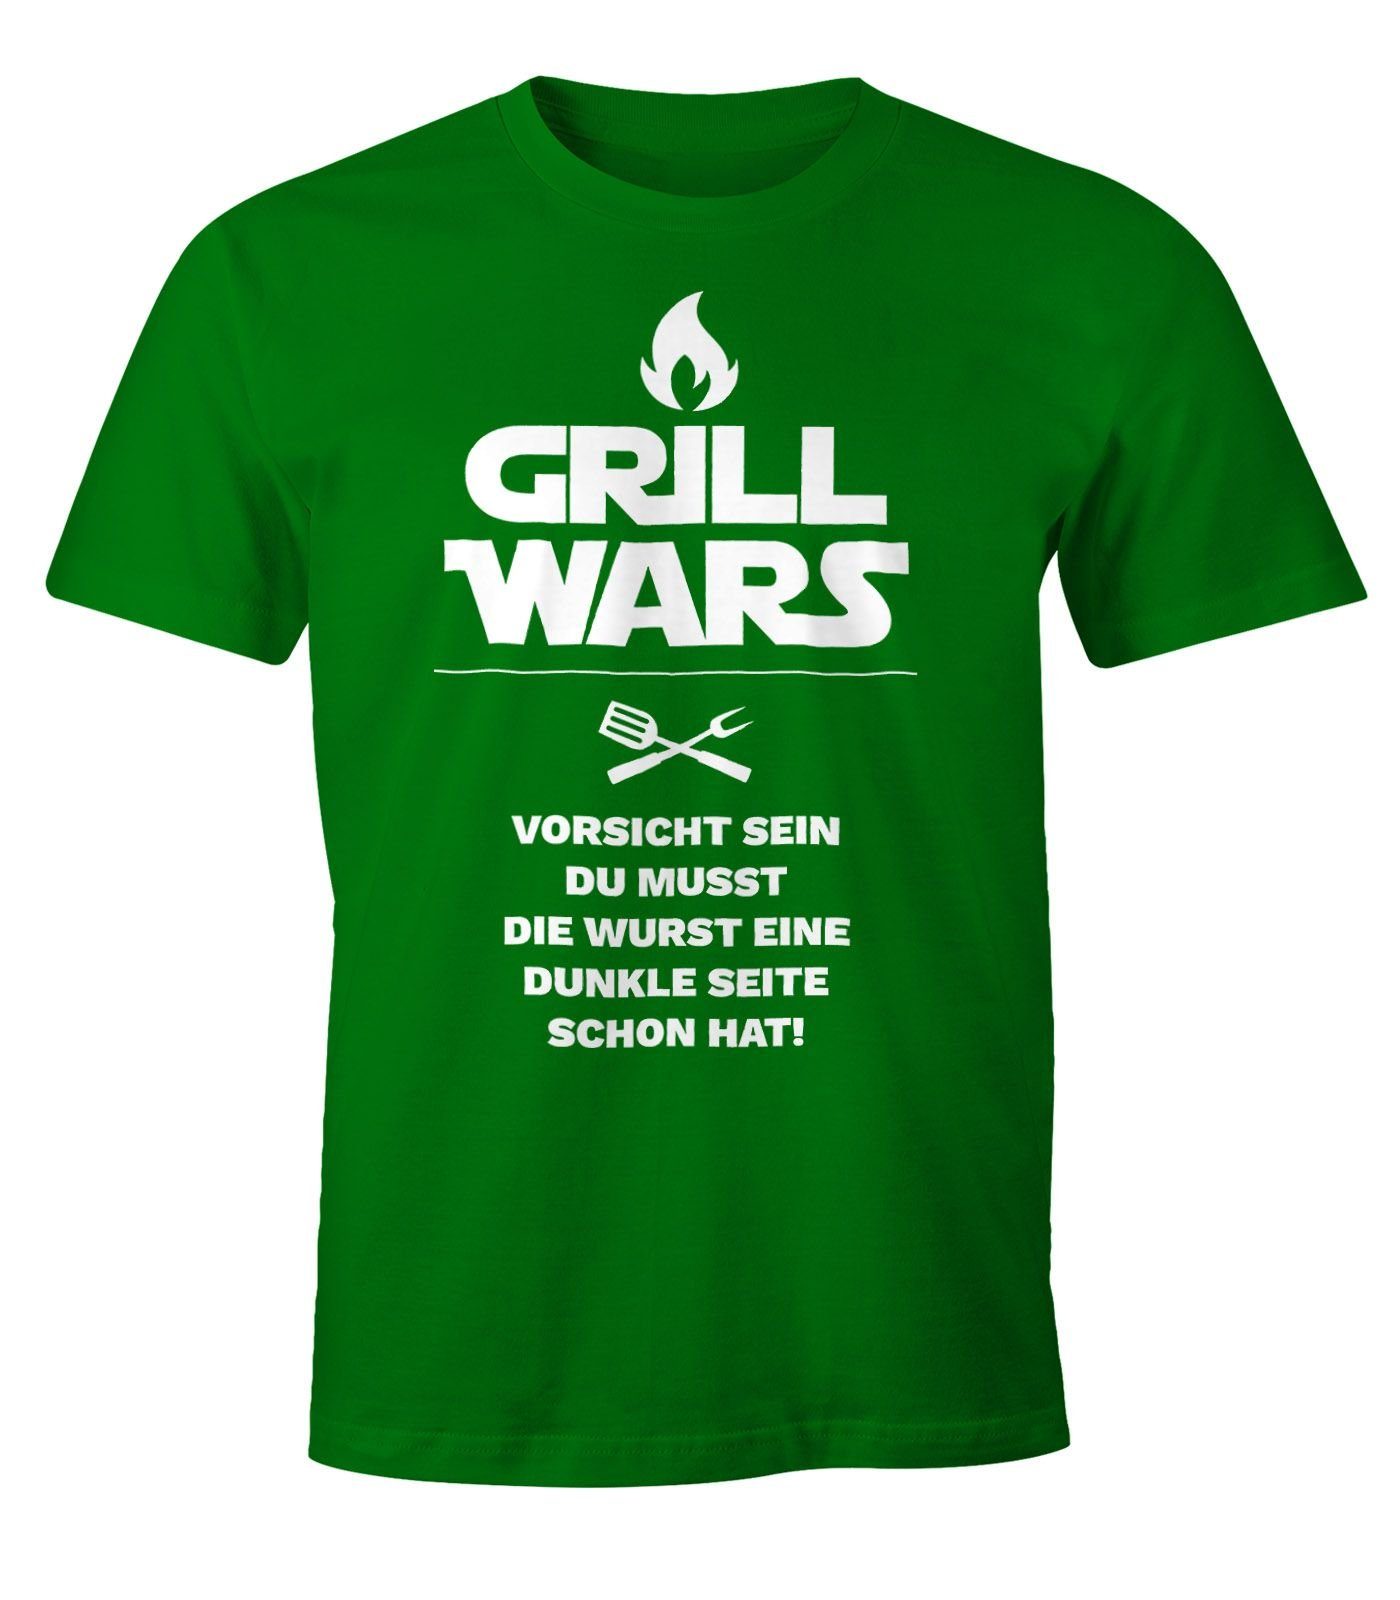 Neueste Produkte aus dem Ausland MoonWorks Print-Shirt Herren Fun-Shirt Wars grün Grill mit Moonworks® Print mit T-Shirt Spruch